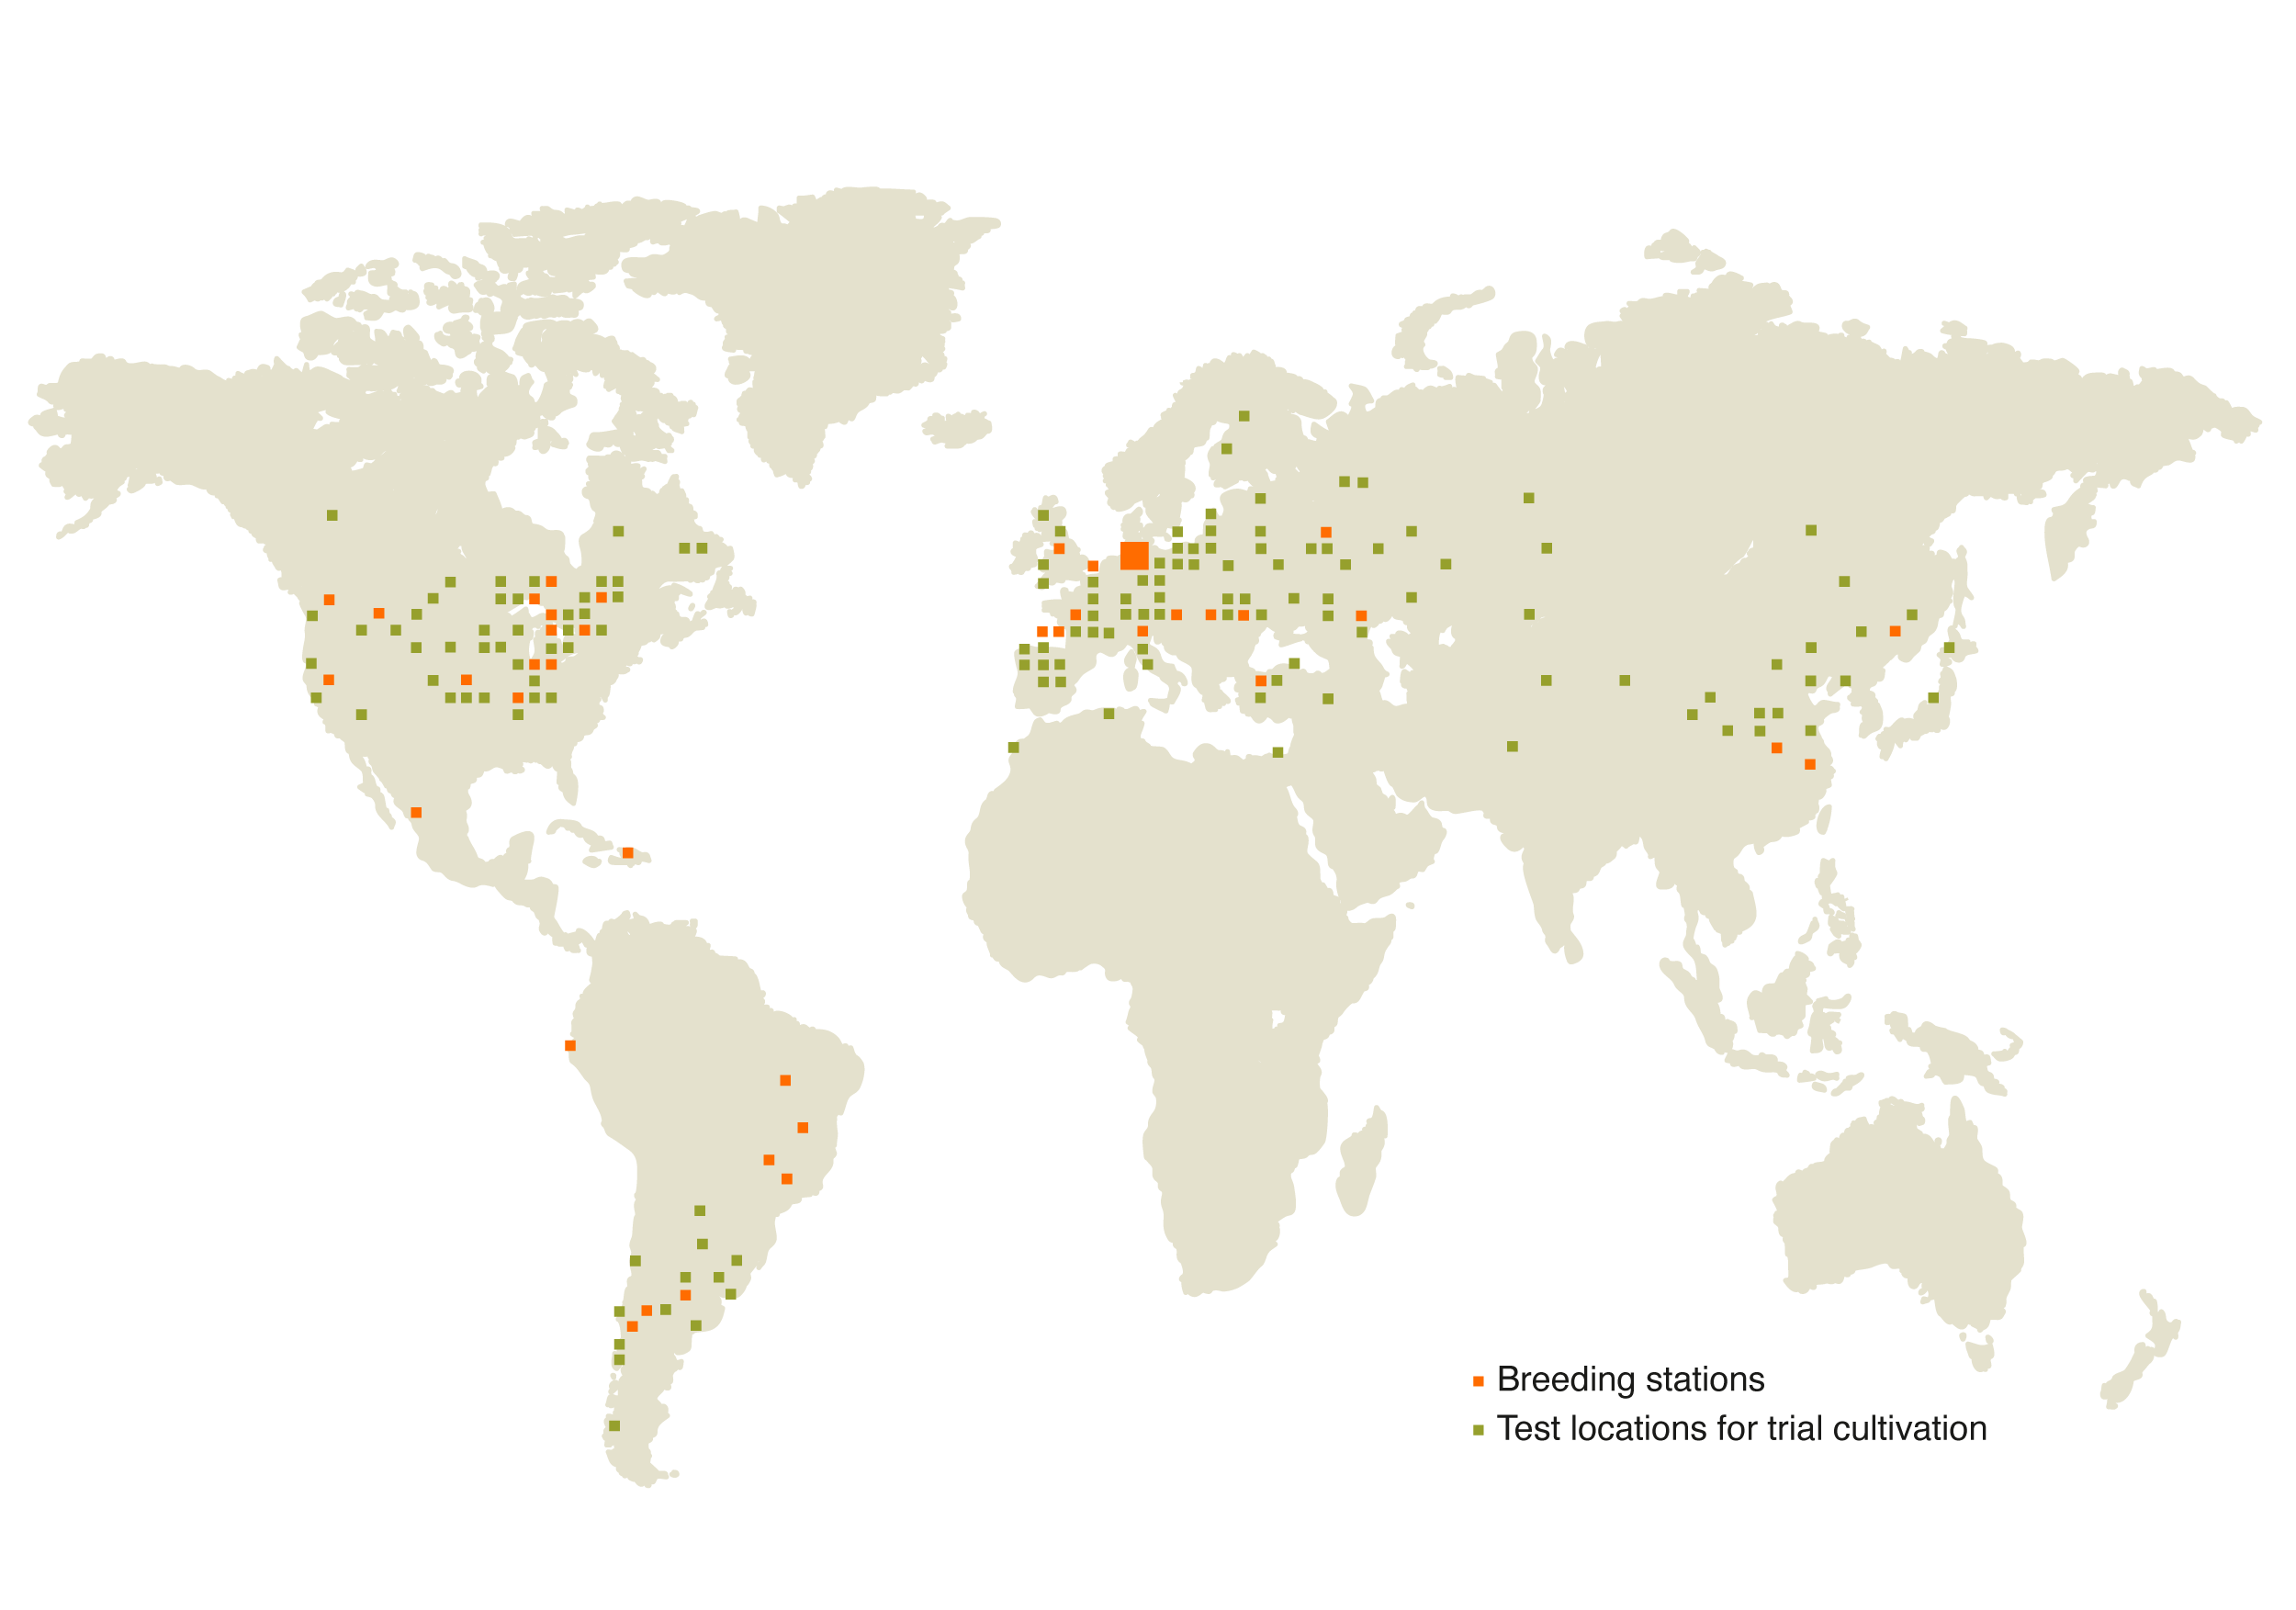 Mapa mundial con las estaciones de mejoramiento y las zonas de ensayo de KWS marcadas